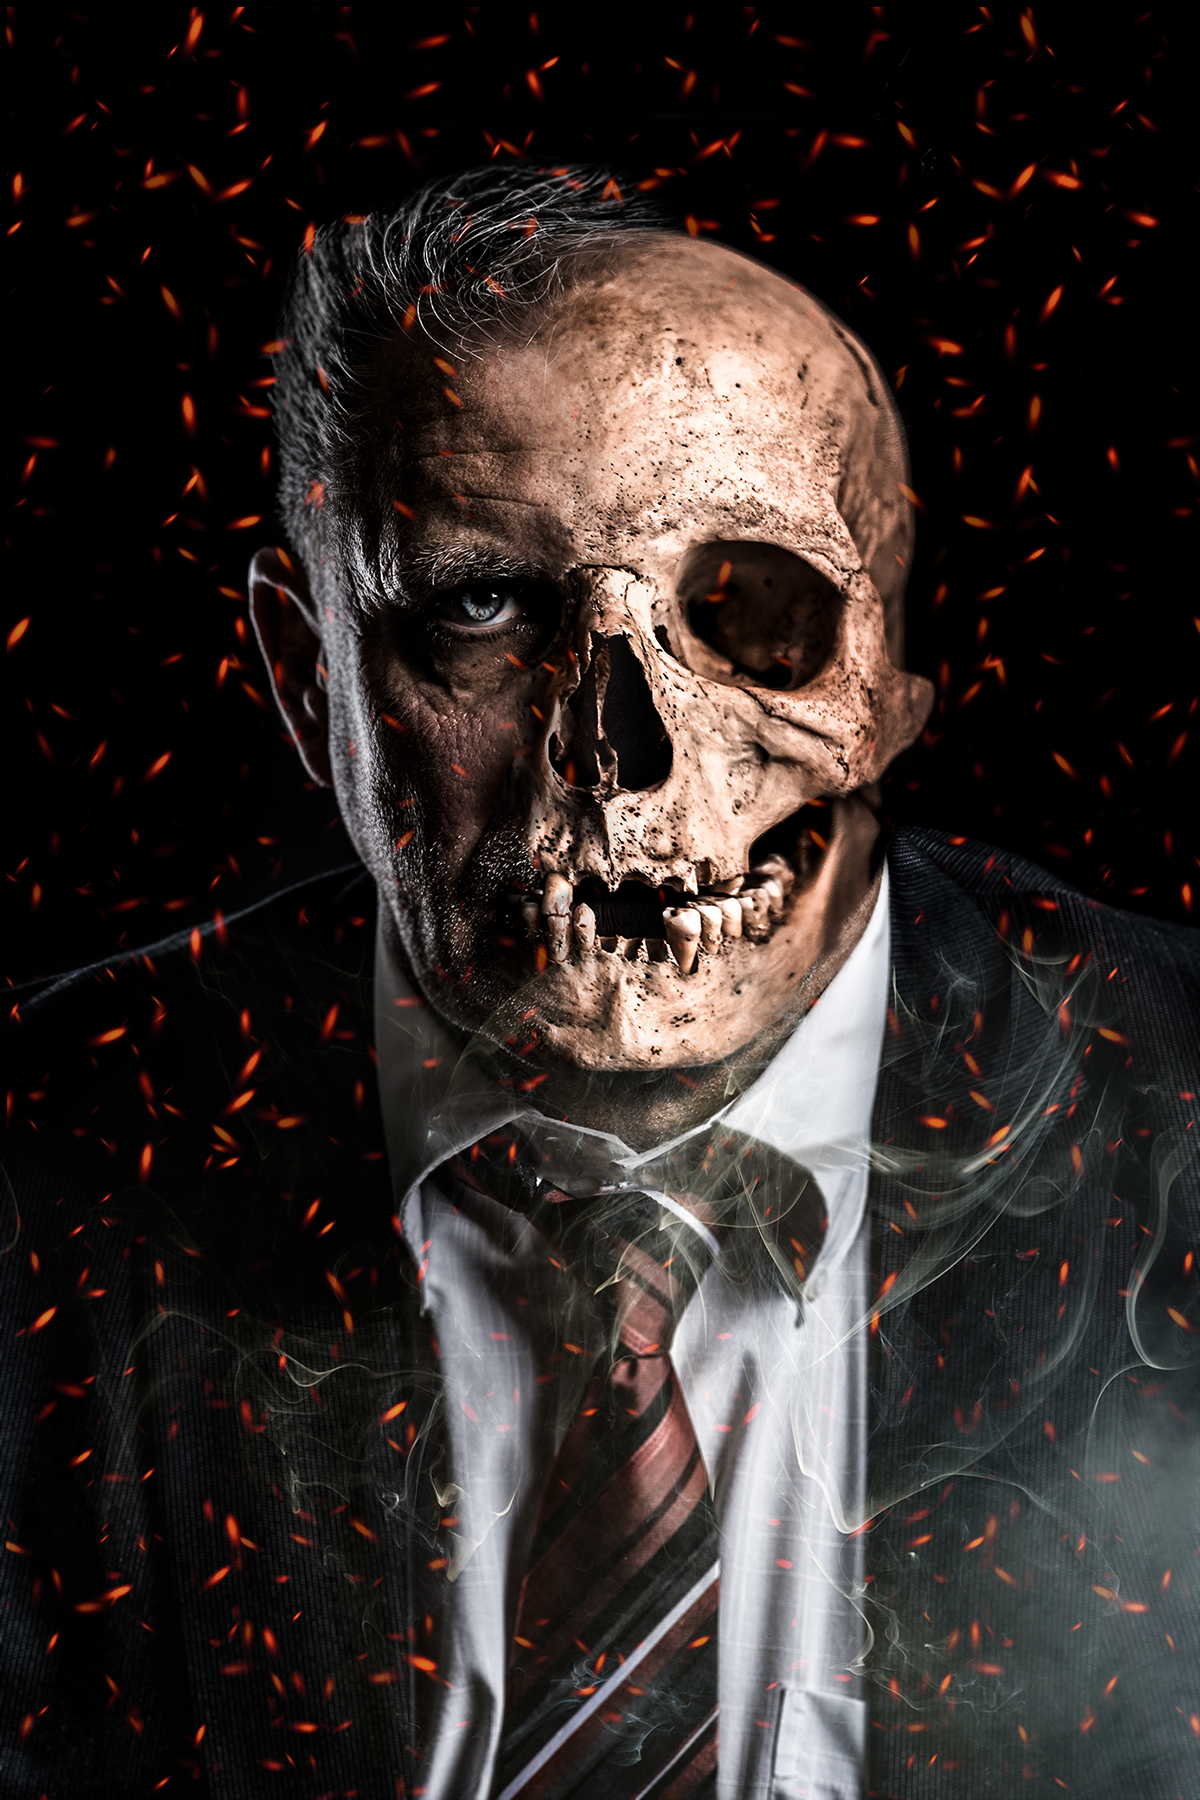 manipulation digitalart photoshop skull fire antifumo antismoking social media